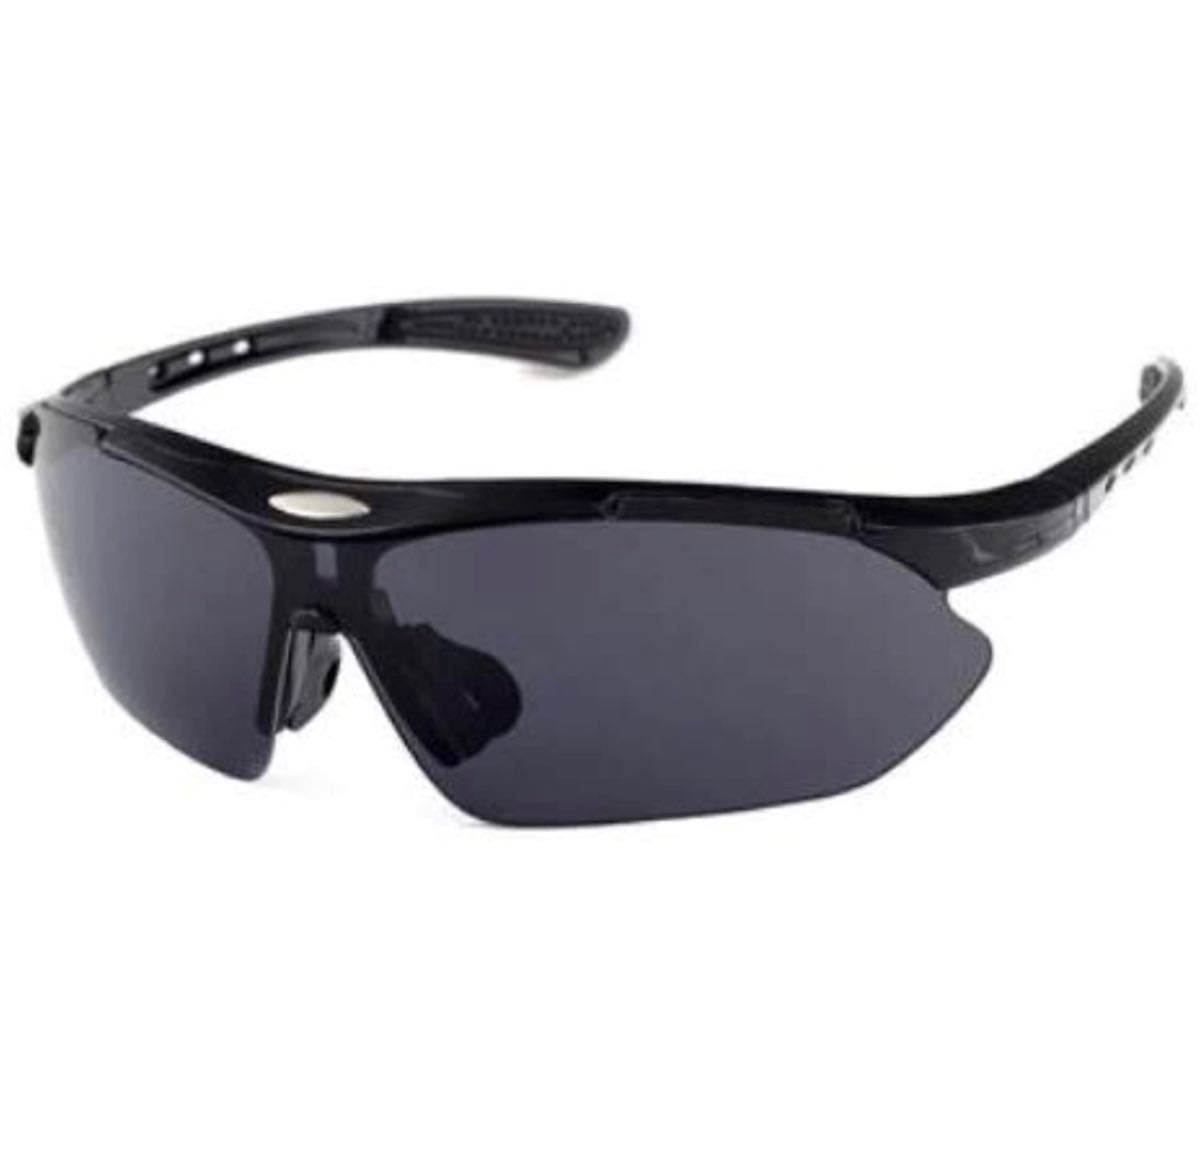 ツーリスト サングラス メンズ レディース スポーツサングラス UV400 紫外線カット 超軽量 ランニング